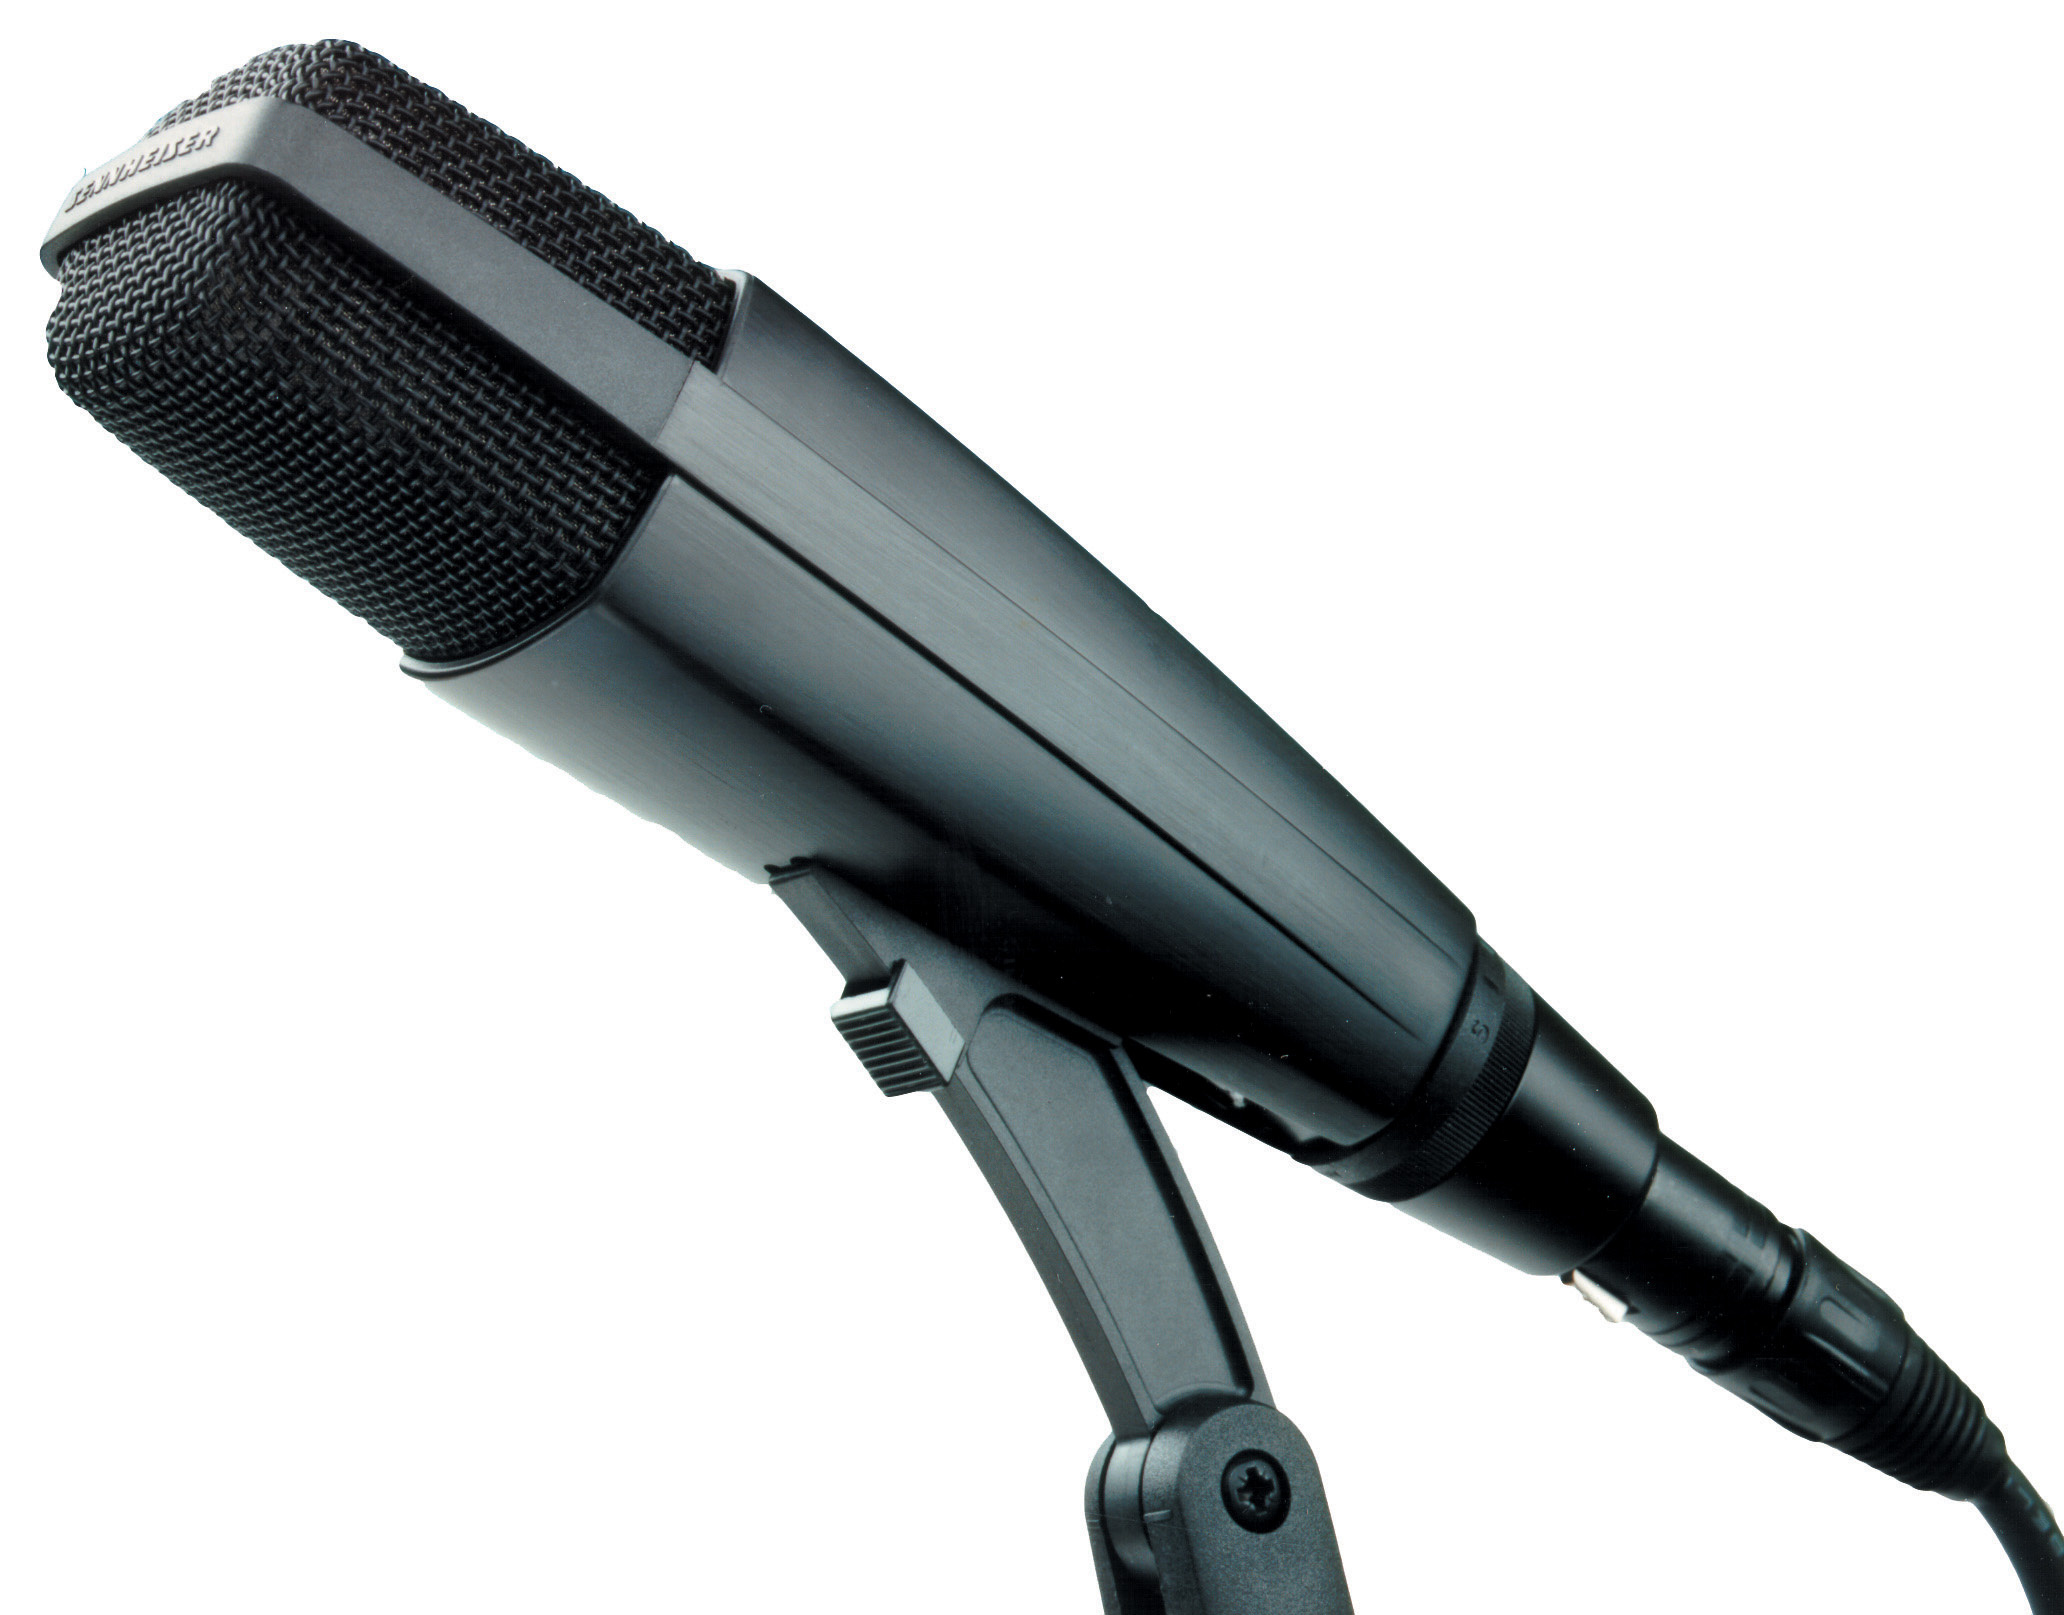 Sennheiser MD 421-II Classic Studio Microphone